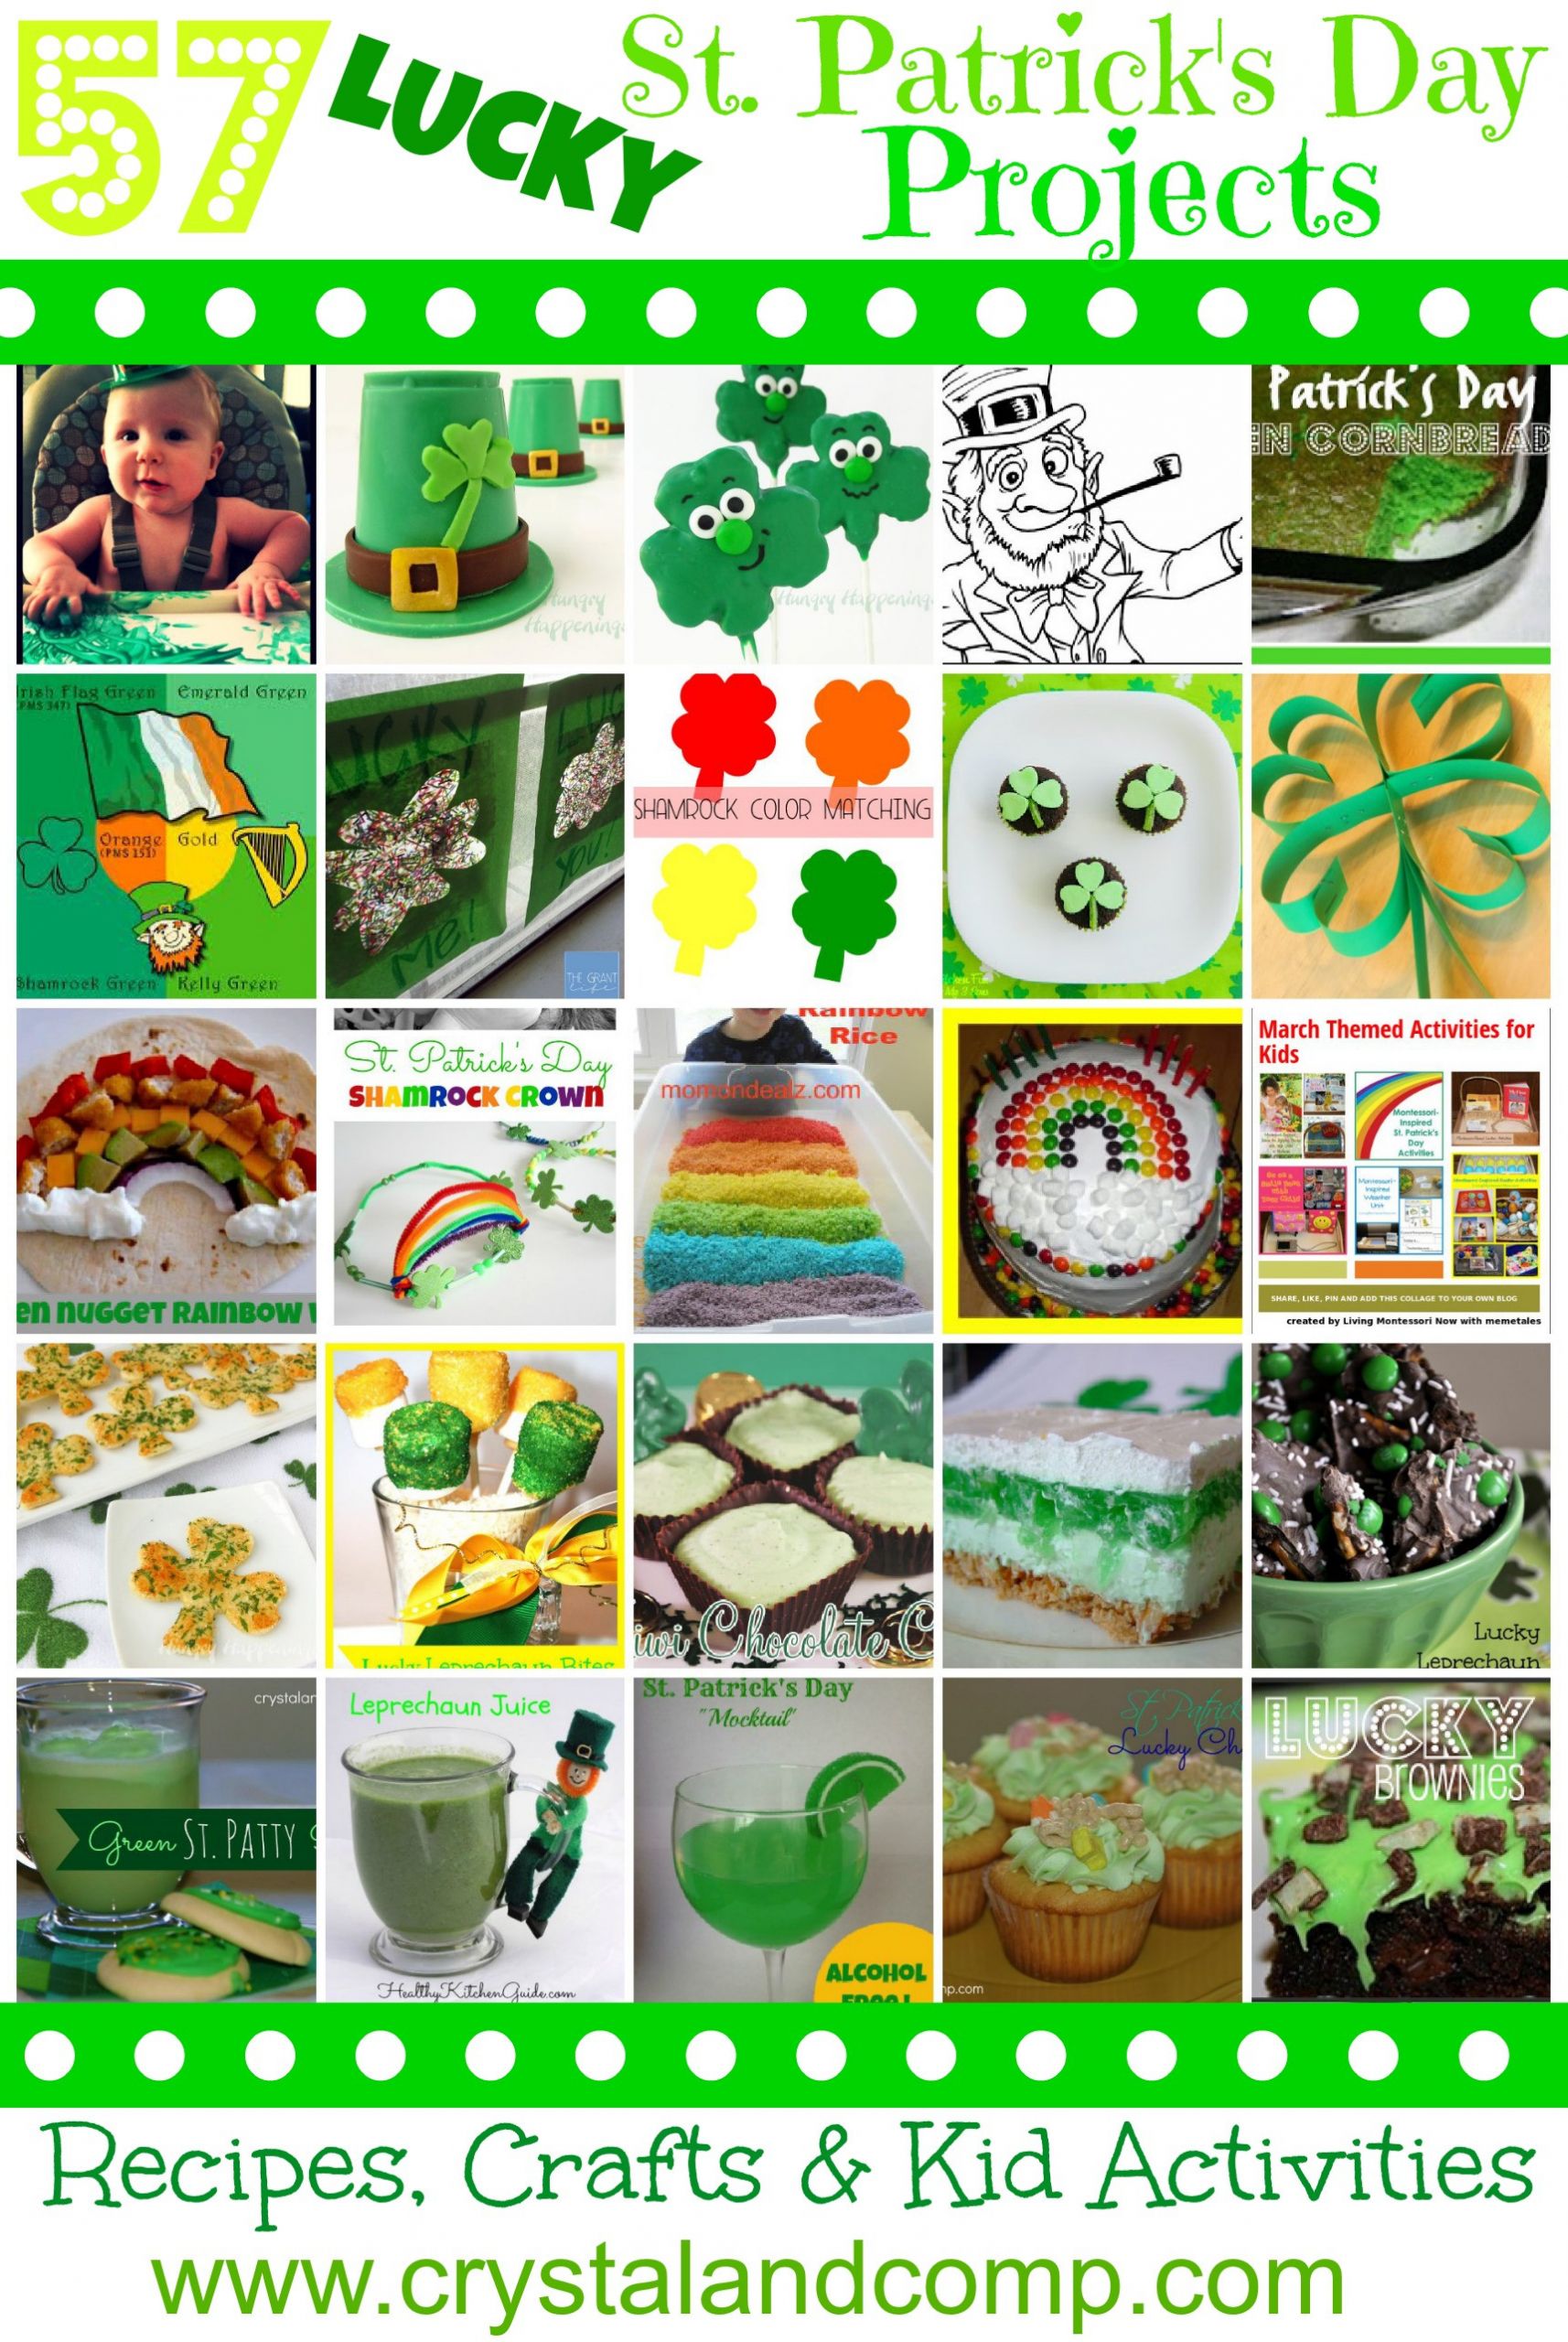 Pinterest St Patrick's Day Crafts
 Over 50 St Patrick Day Crafts